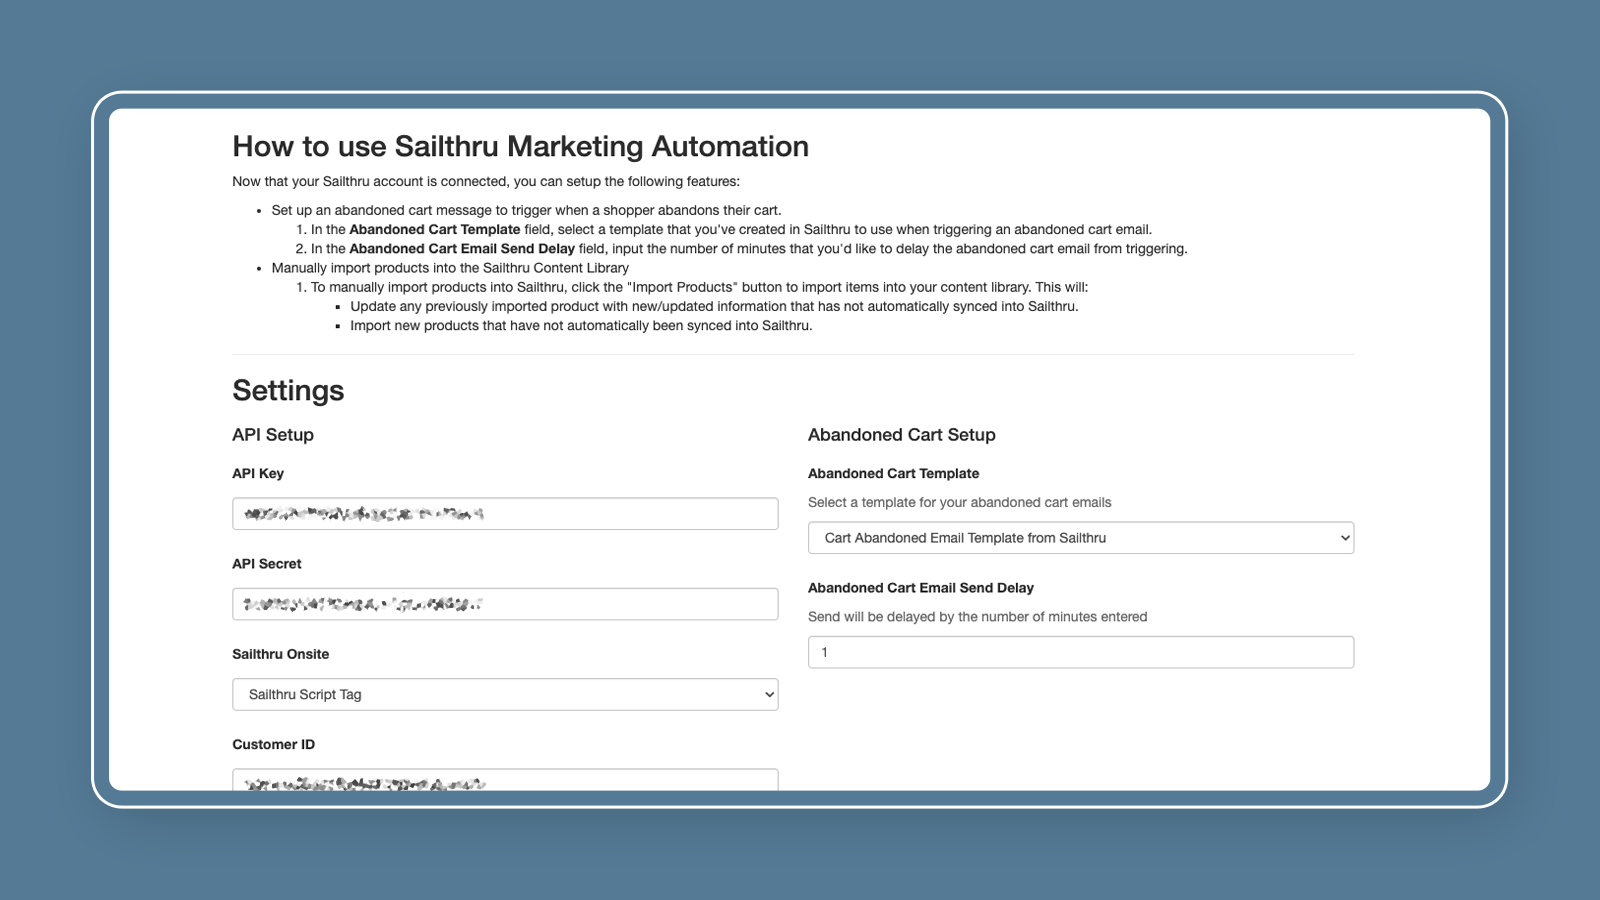 Captura de tela do aplicativo Sailthru Marketing Automation.